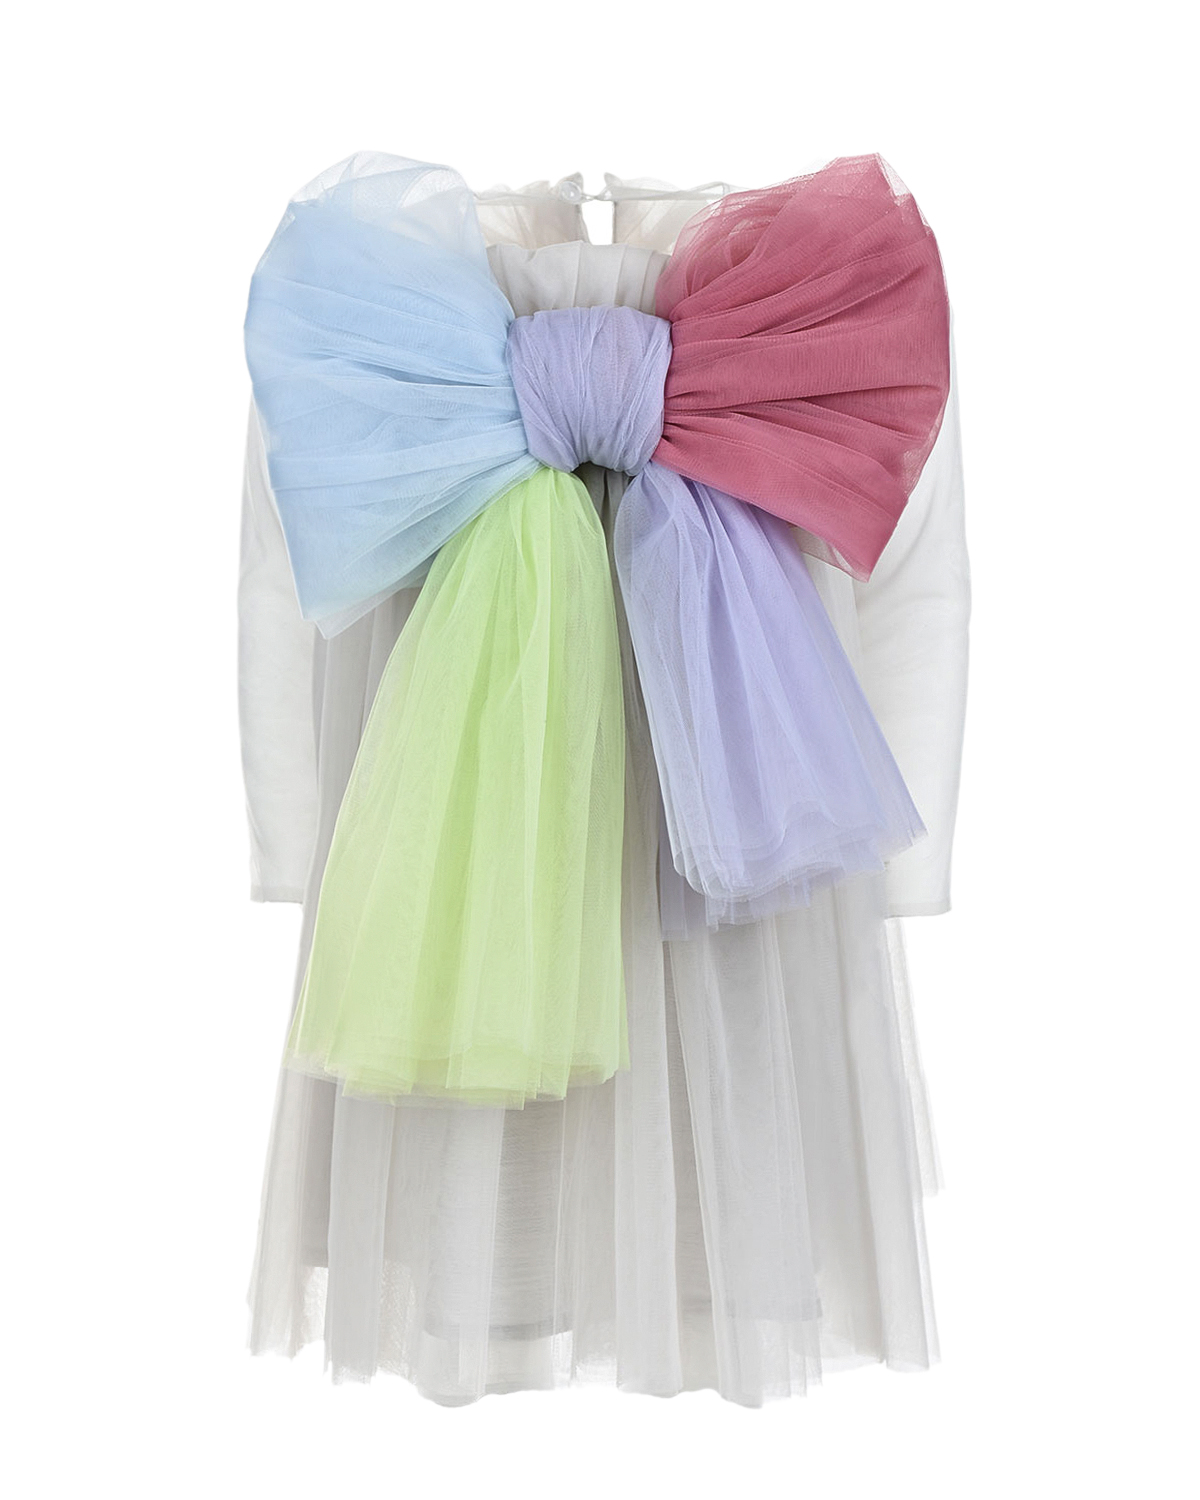 Купить Платье с разноцветным бантом Nikolia детское, Серый, 100%полиэстер, 100%хлопок